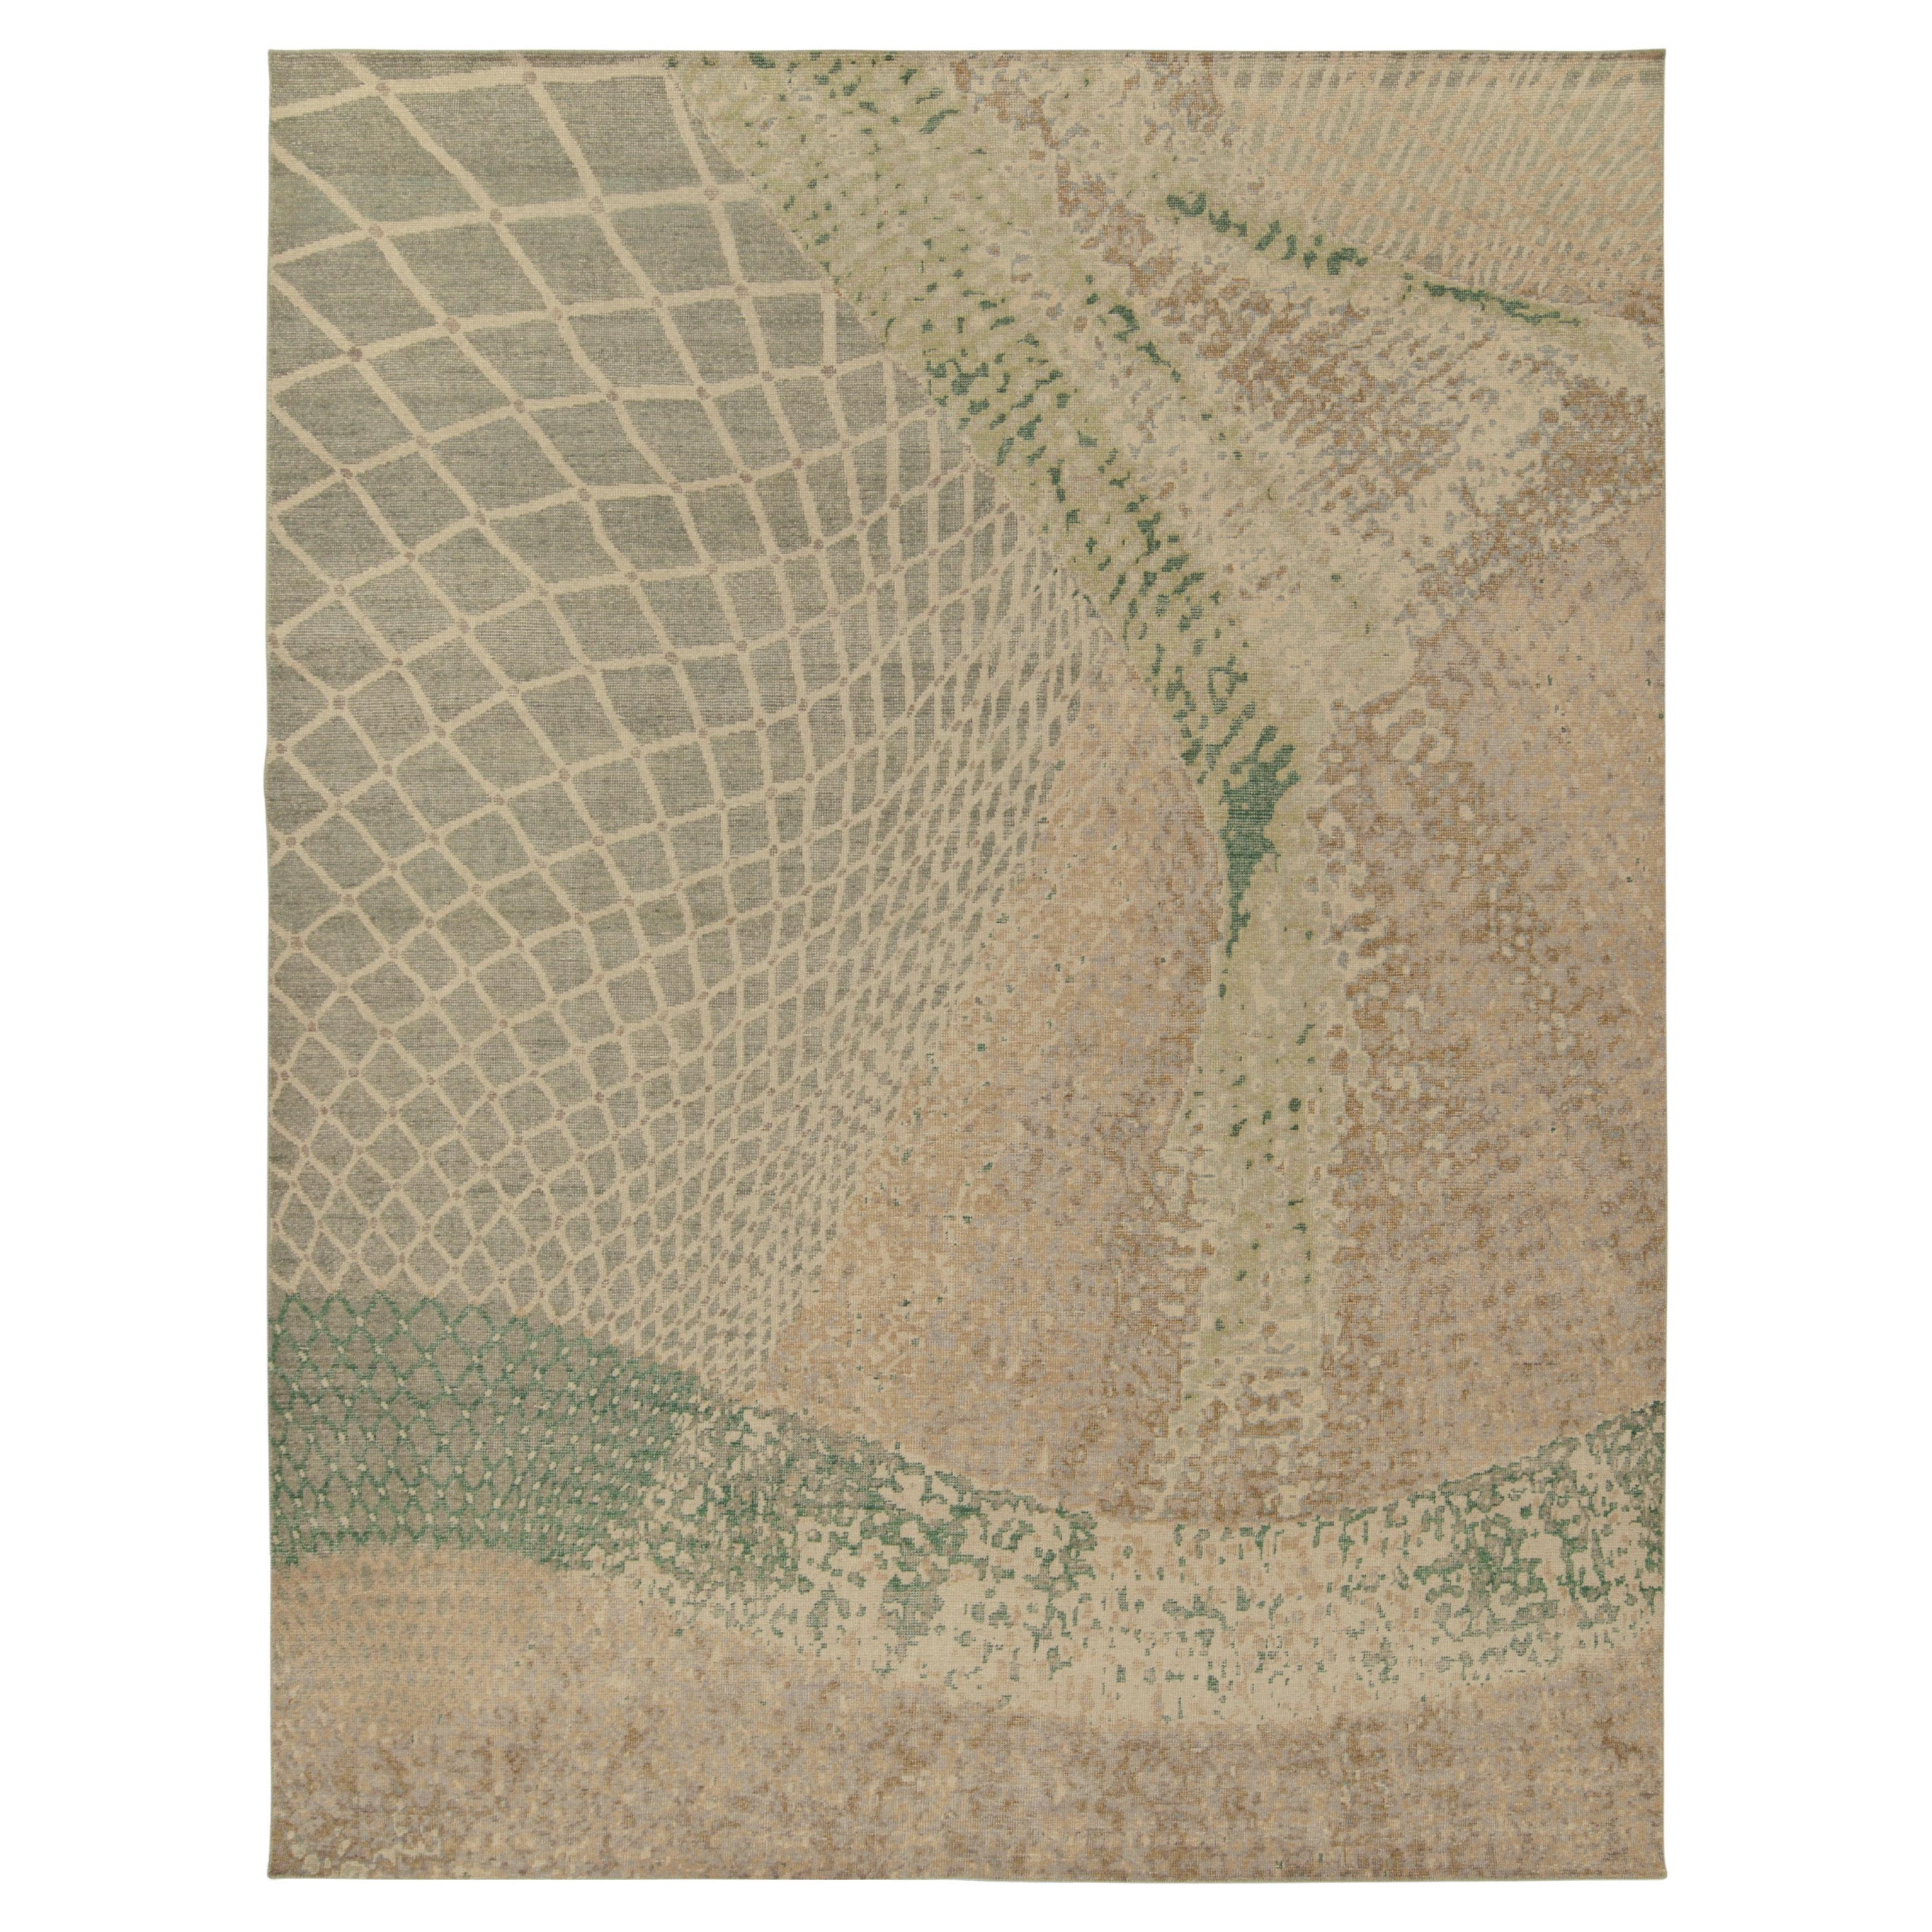 Rug & Kilim's Distressed Style Modern Rug in Beige, Green Abstract Pattern (Tapis moderne en beige, motif abstrait vert) en vente